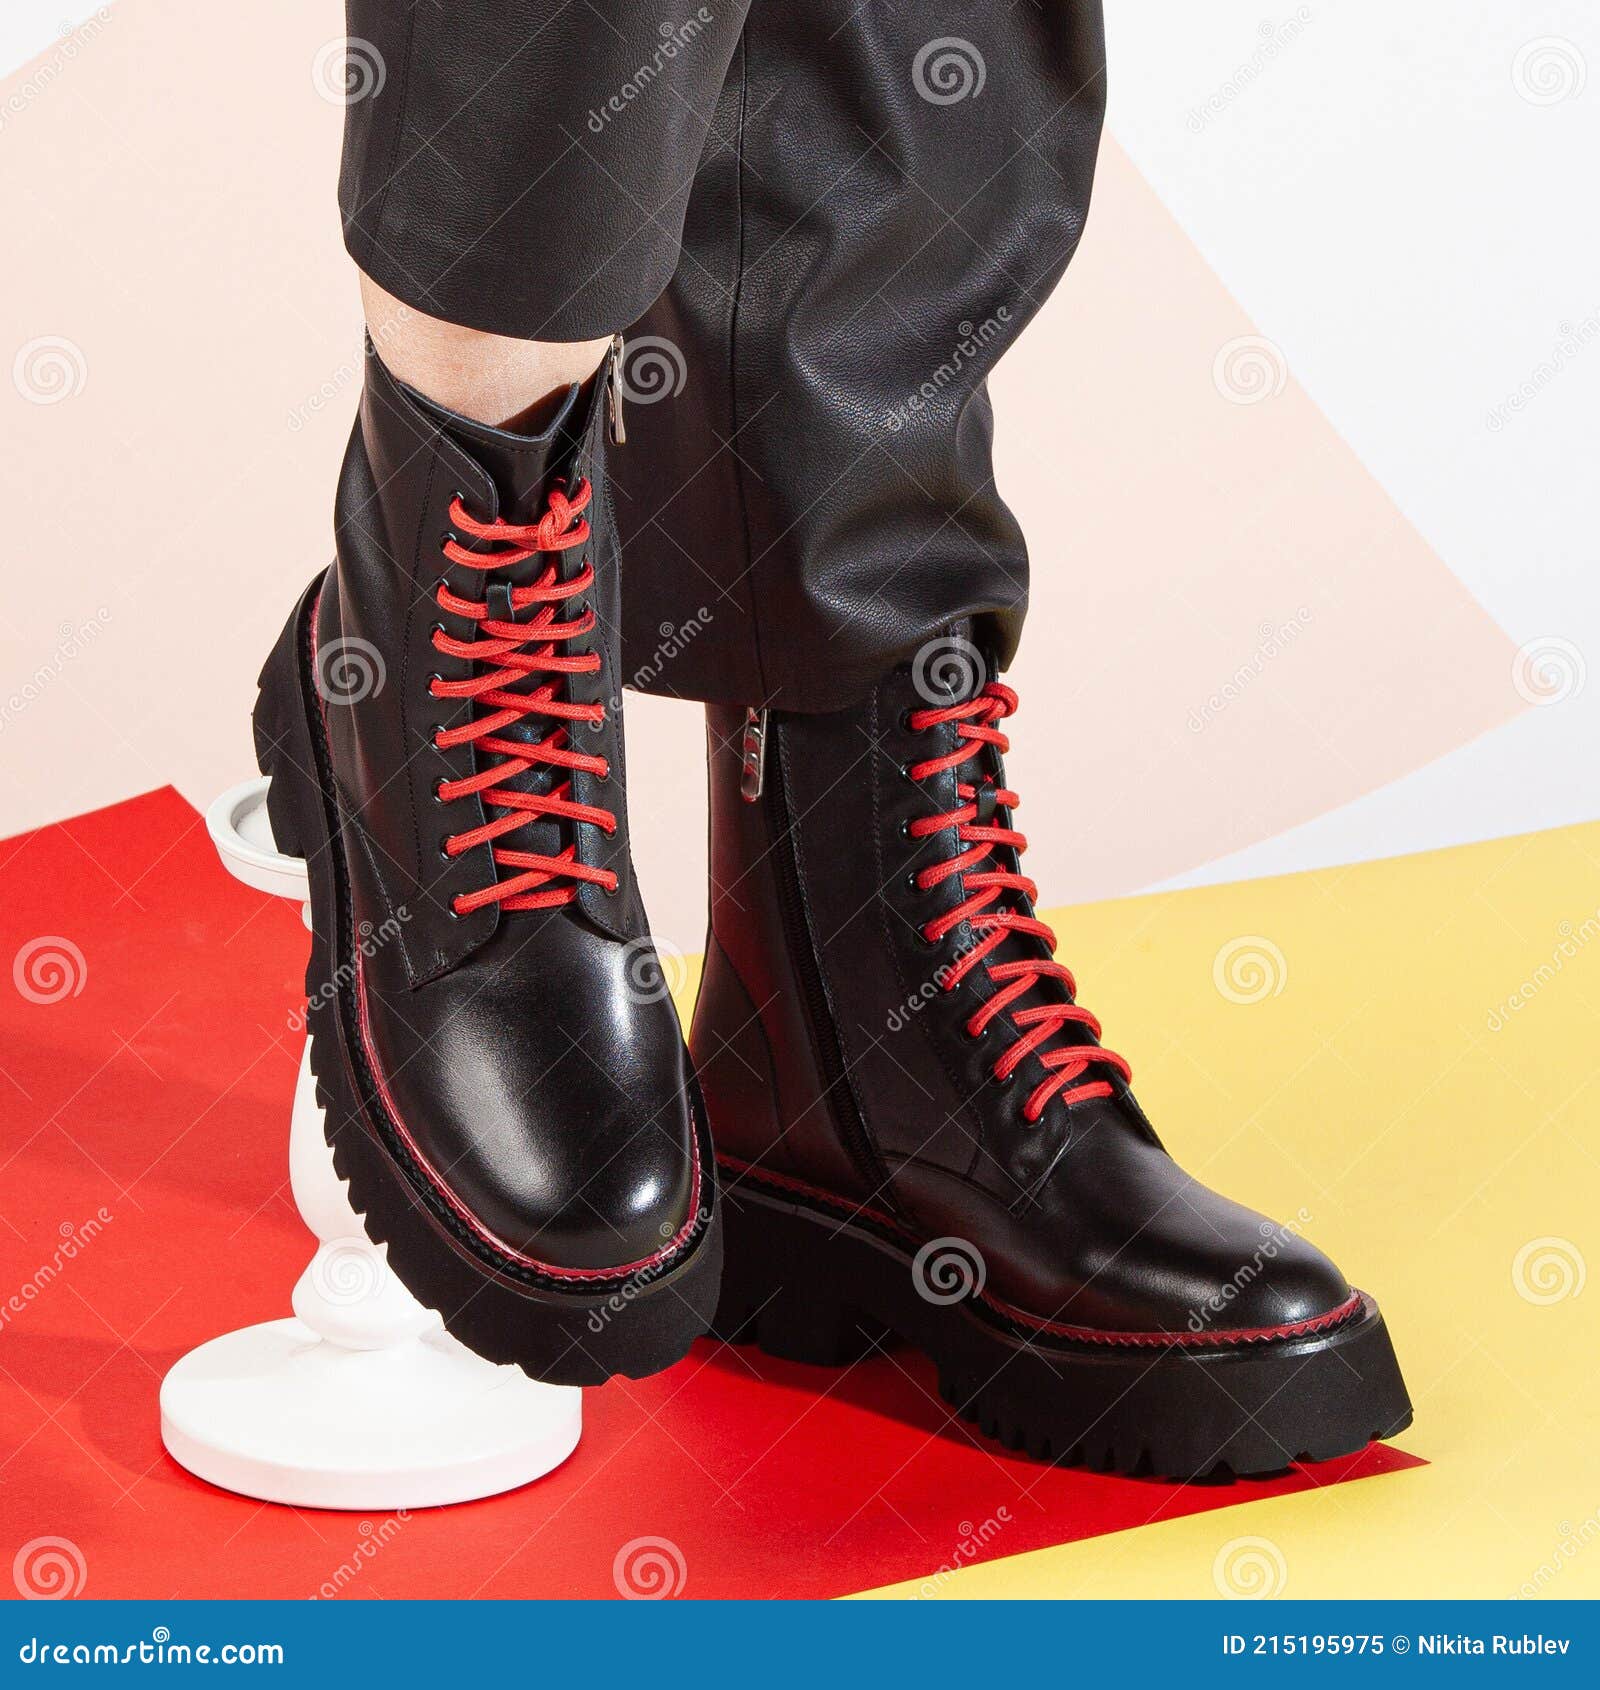 Botas De Mujer Zapatos Grandes Negros Cordones Rojos En Estudio Imagen de archivo - Imagen de moderno, encanto: 215195975